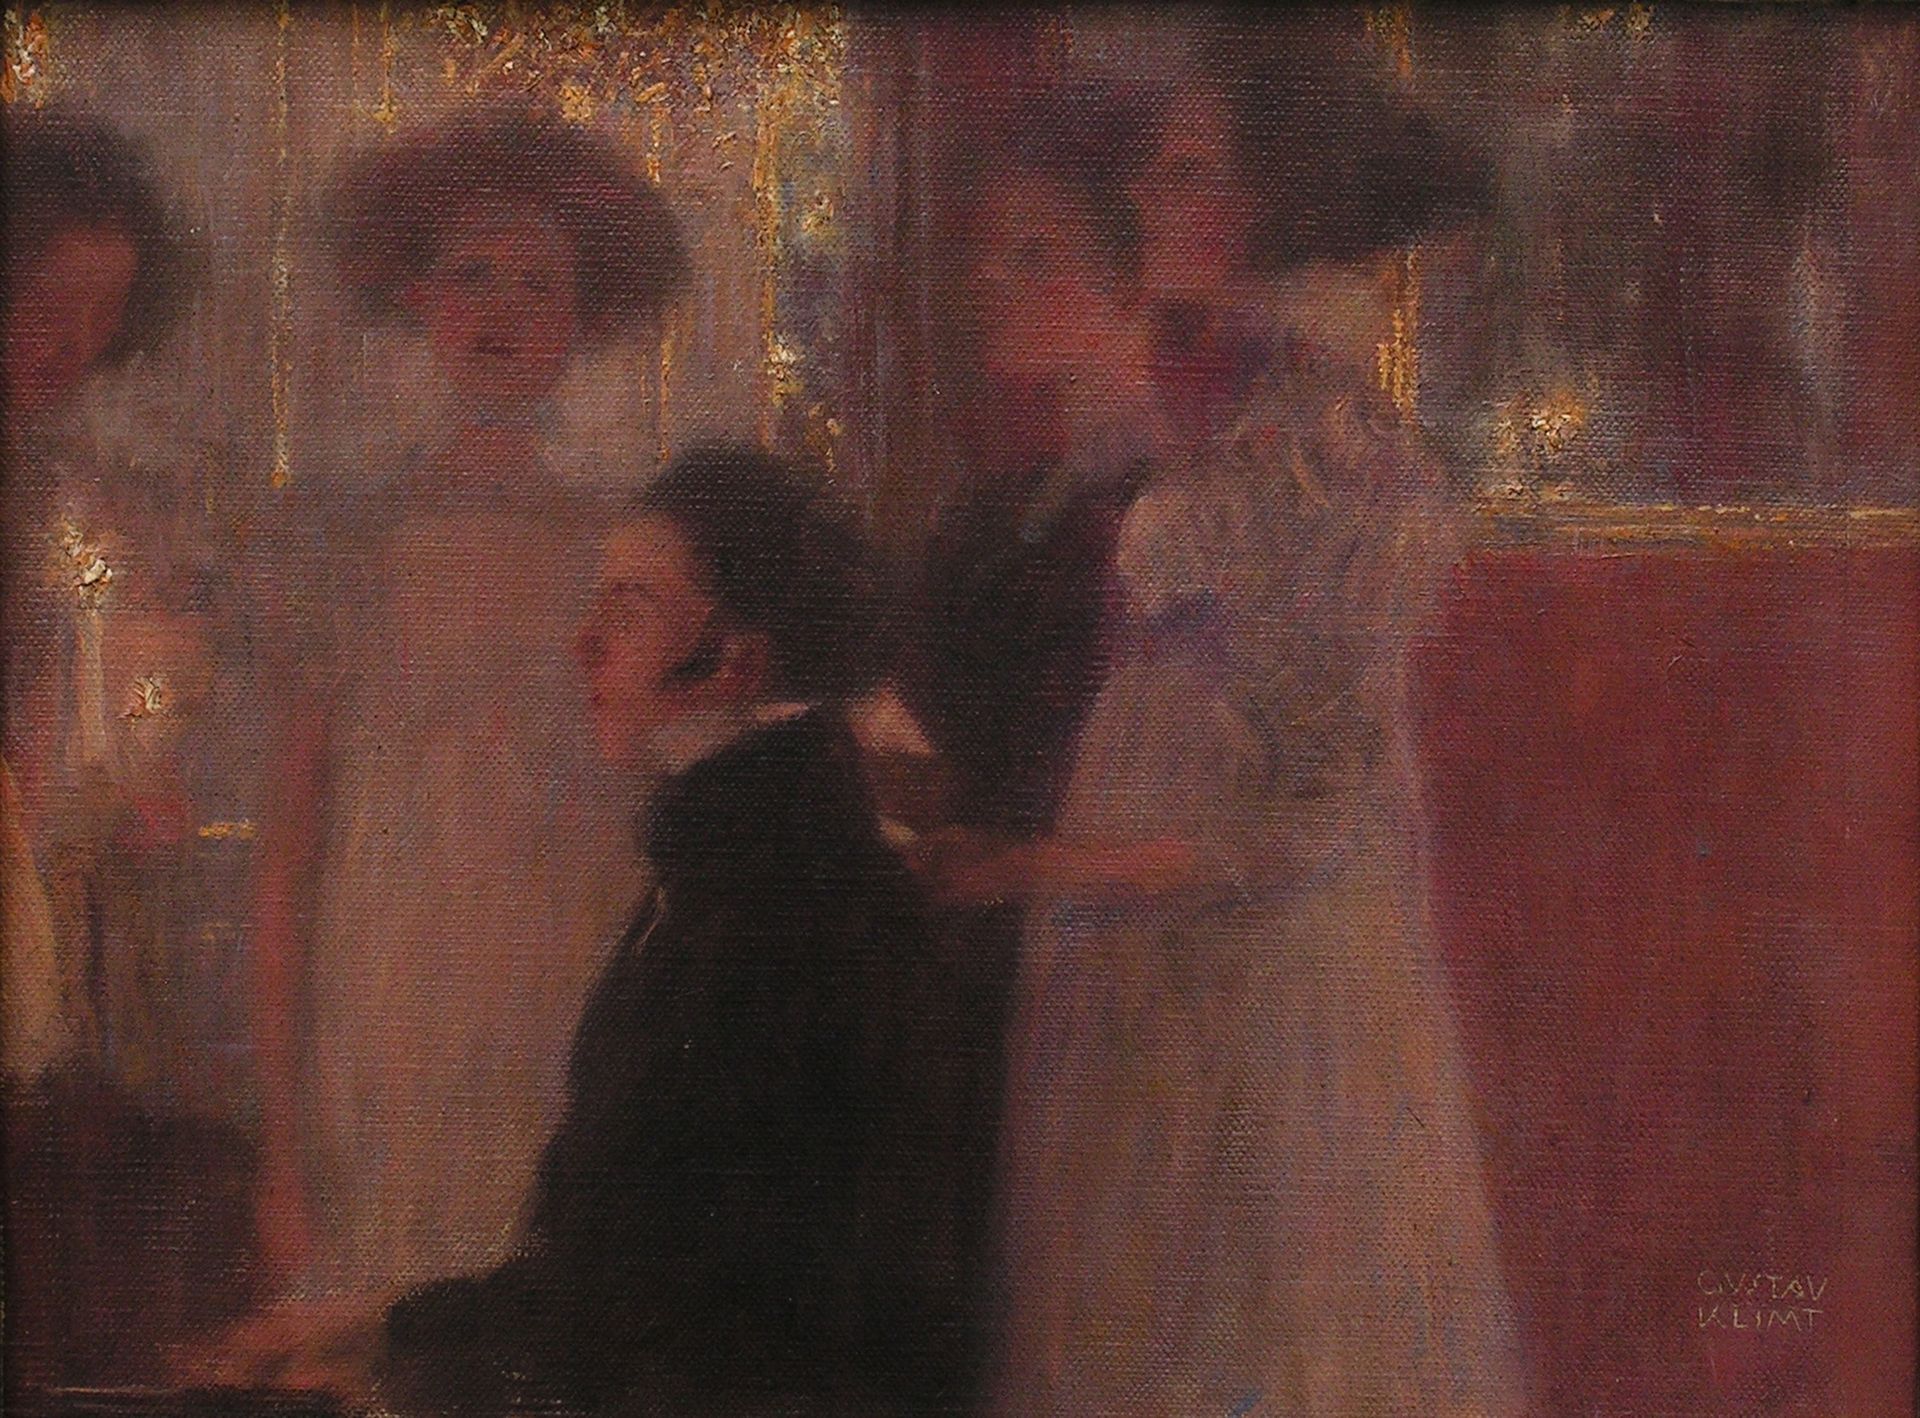 Schubert au piano, peinture de Gustav Klimt